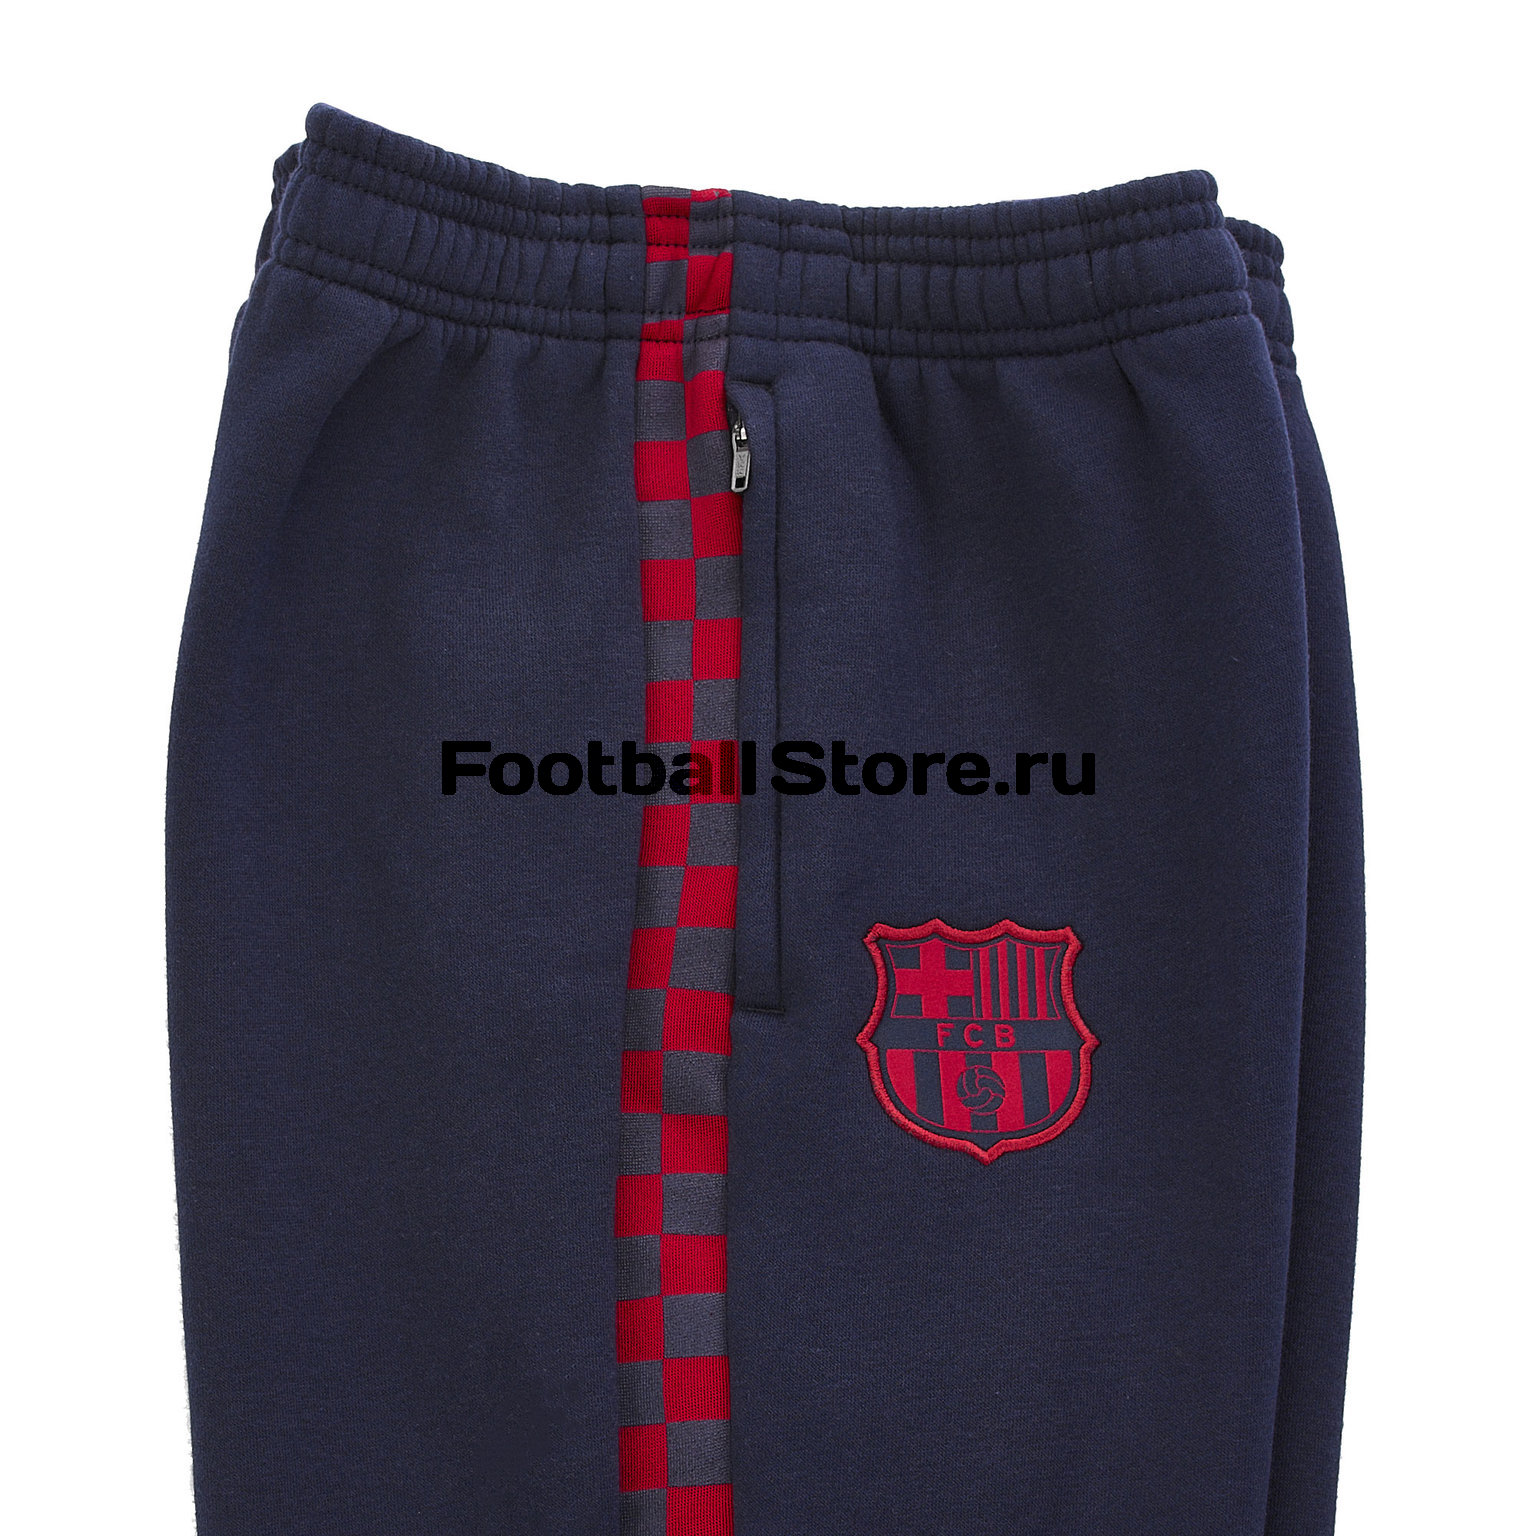 Брюки подростковые Nike Barcelona Fleece Pant AT4507-451